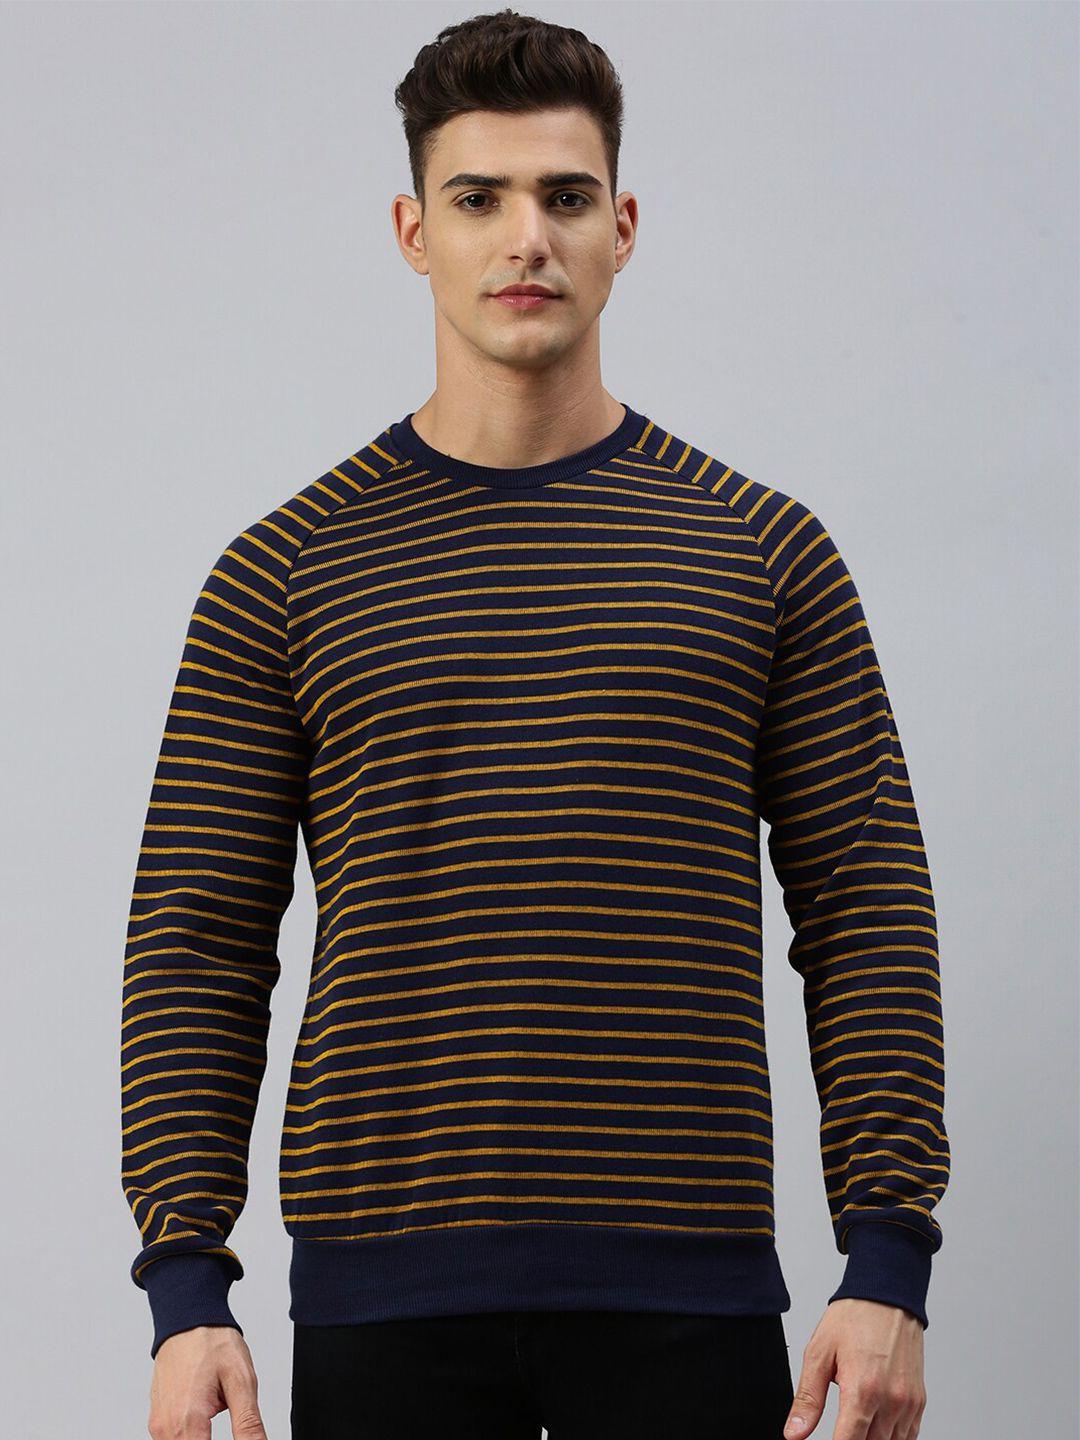 sporto striped cotton pullover sweatshirt